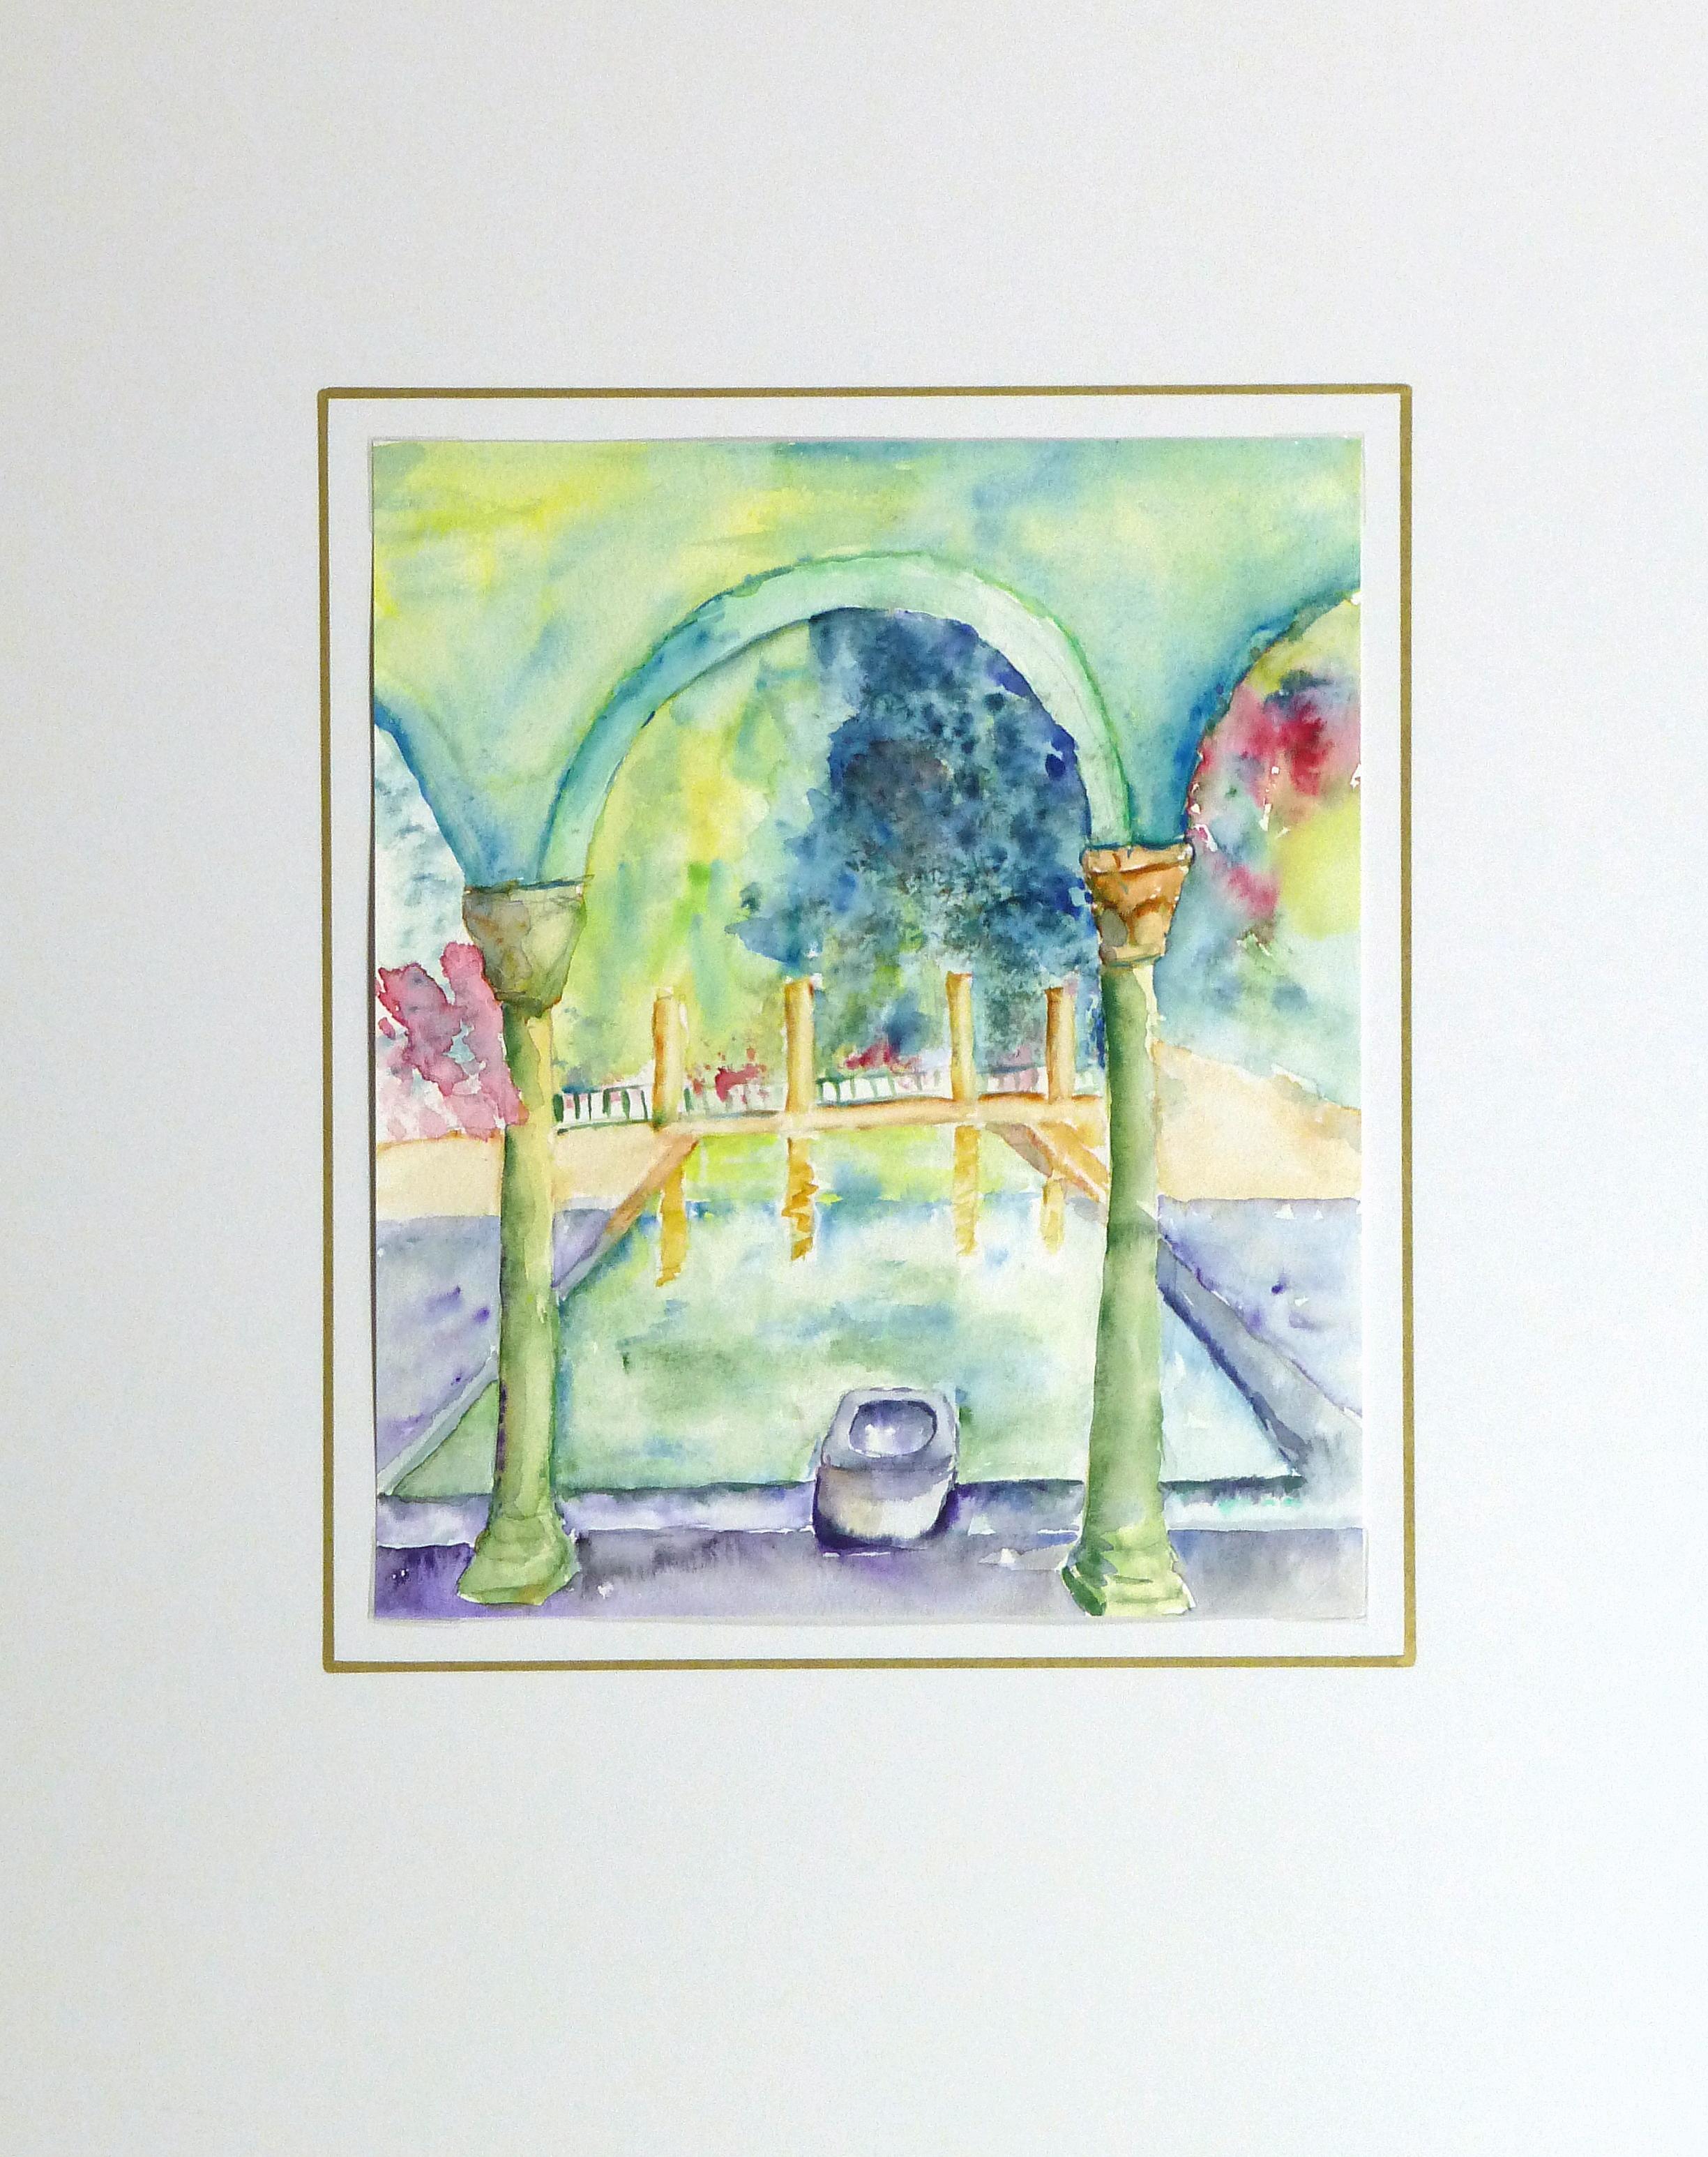 Aquarelle rêveuse et vibrante d'une petite piscine réfléchissante dans la cour d'une villa de style italien par Monique Tachdjian, 2009. 

Présenté sur un passe-partout blanc avec une bordure dorée, il convient à un cadre de taille standard.